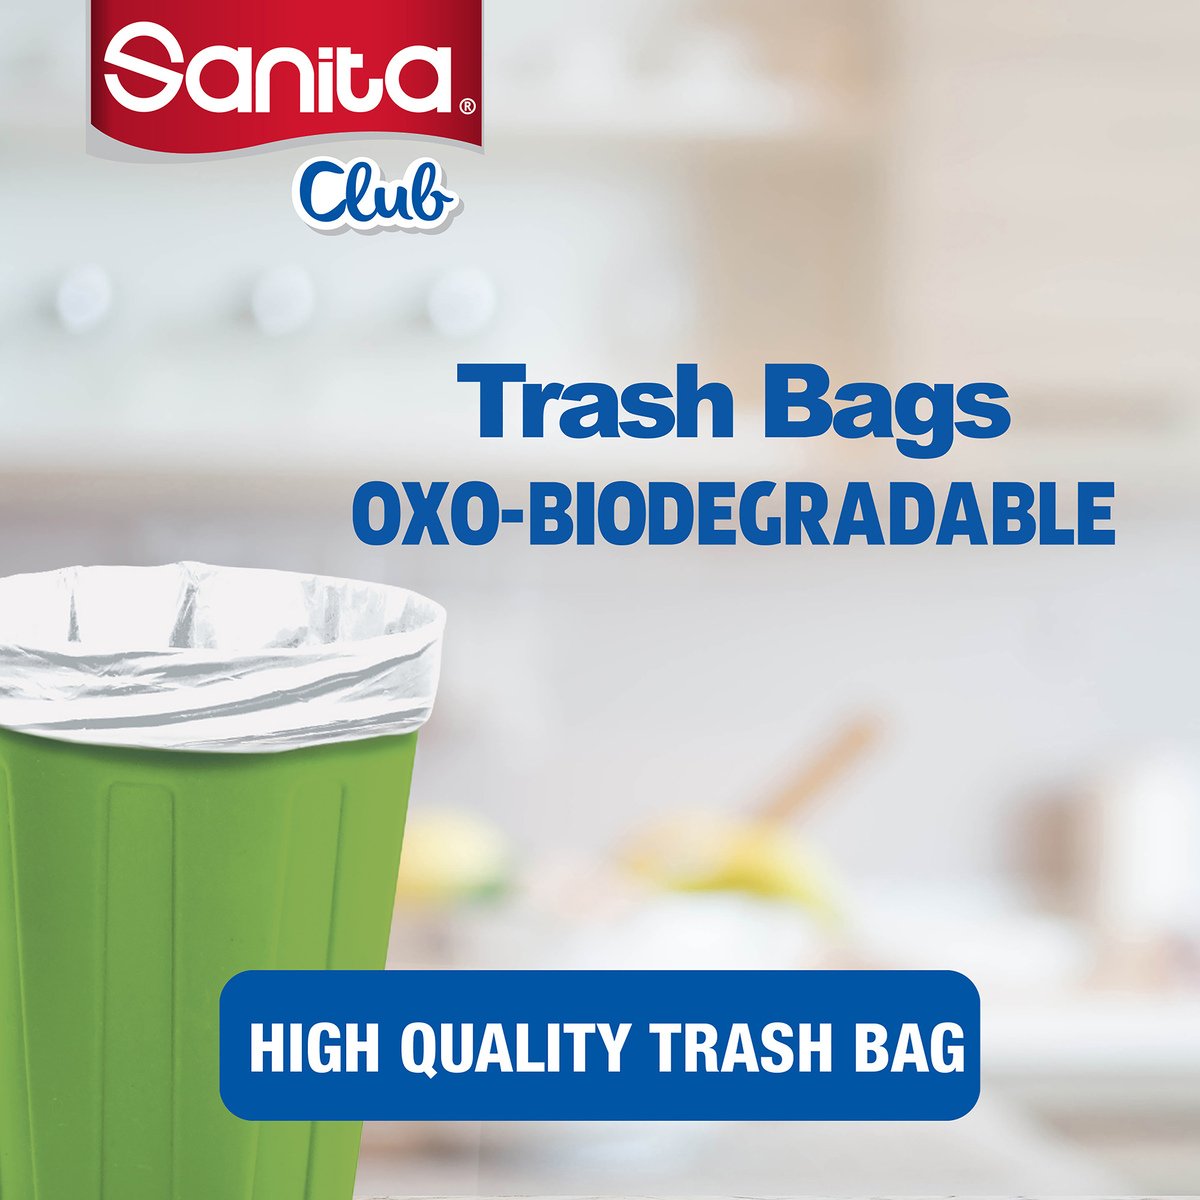 Sanita Club Trash Bags Biodegradable 10 Gallons Size 65 x 52cm 30pcs